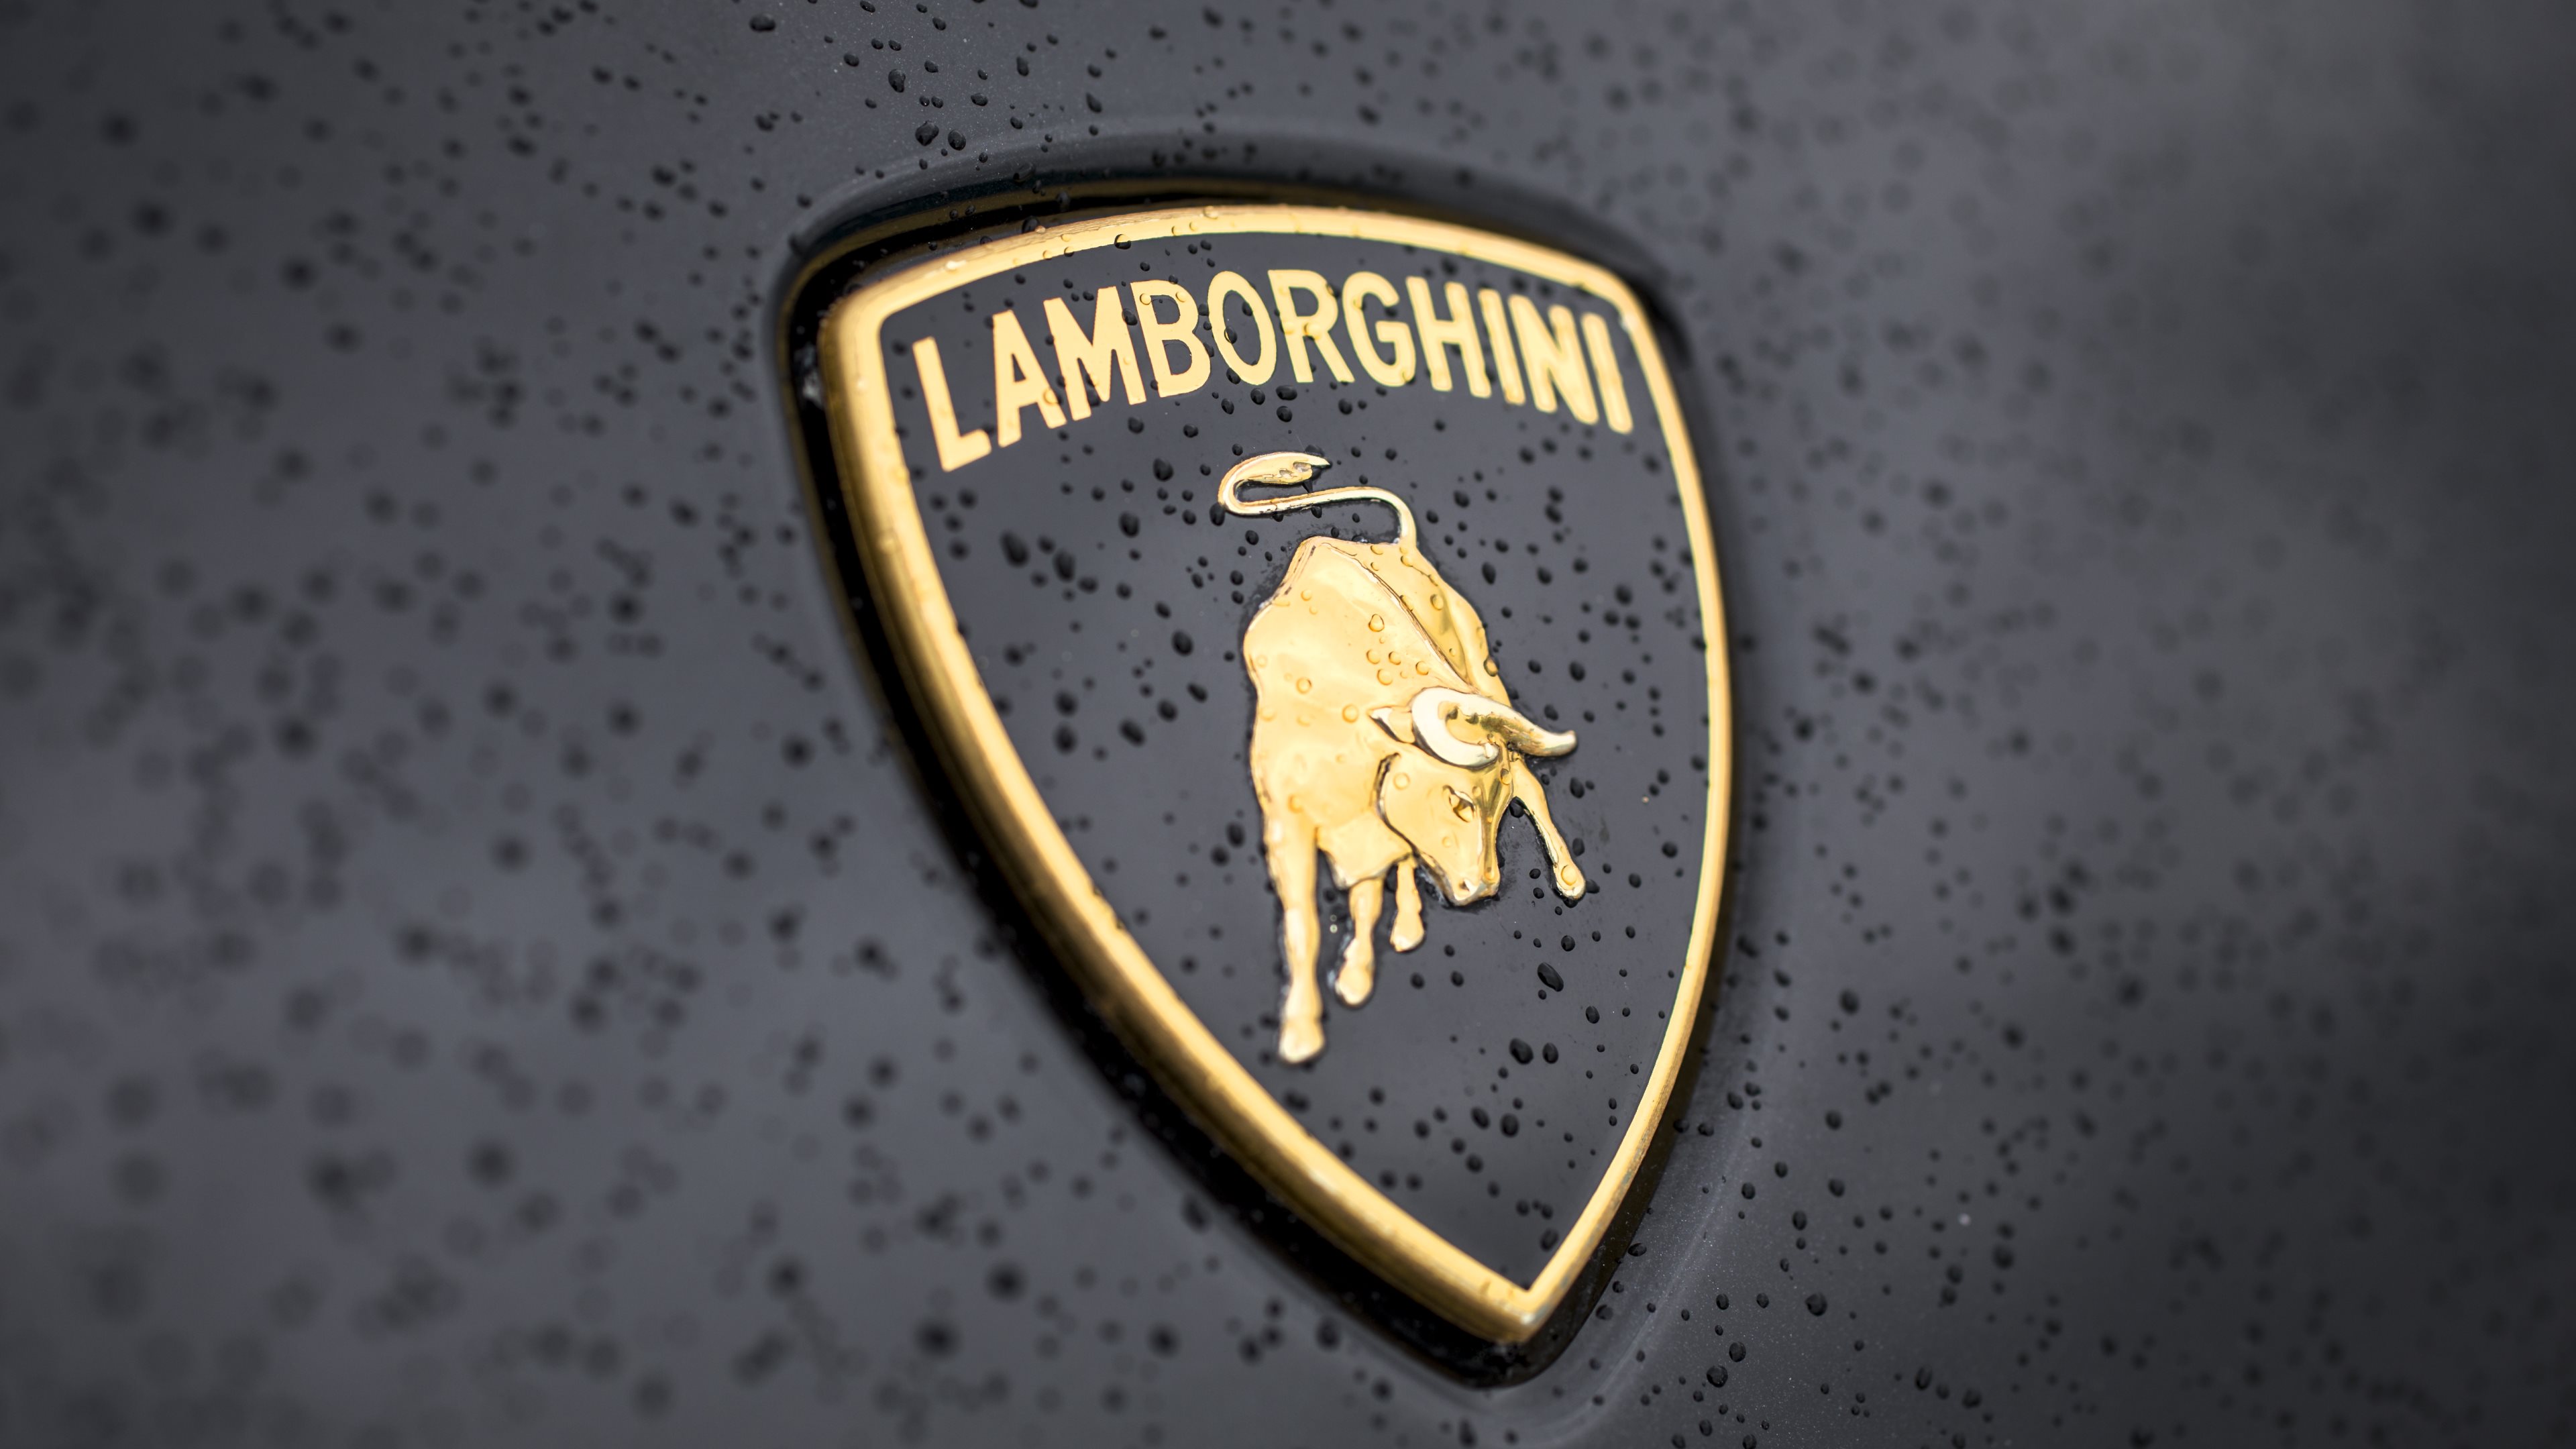 Lambhini Logo Wallpaper